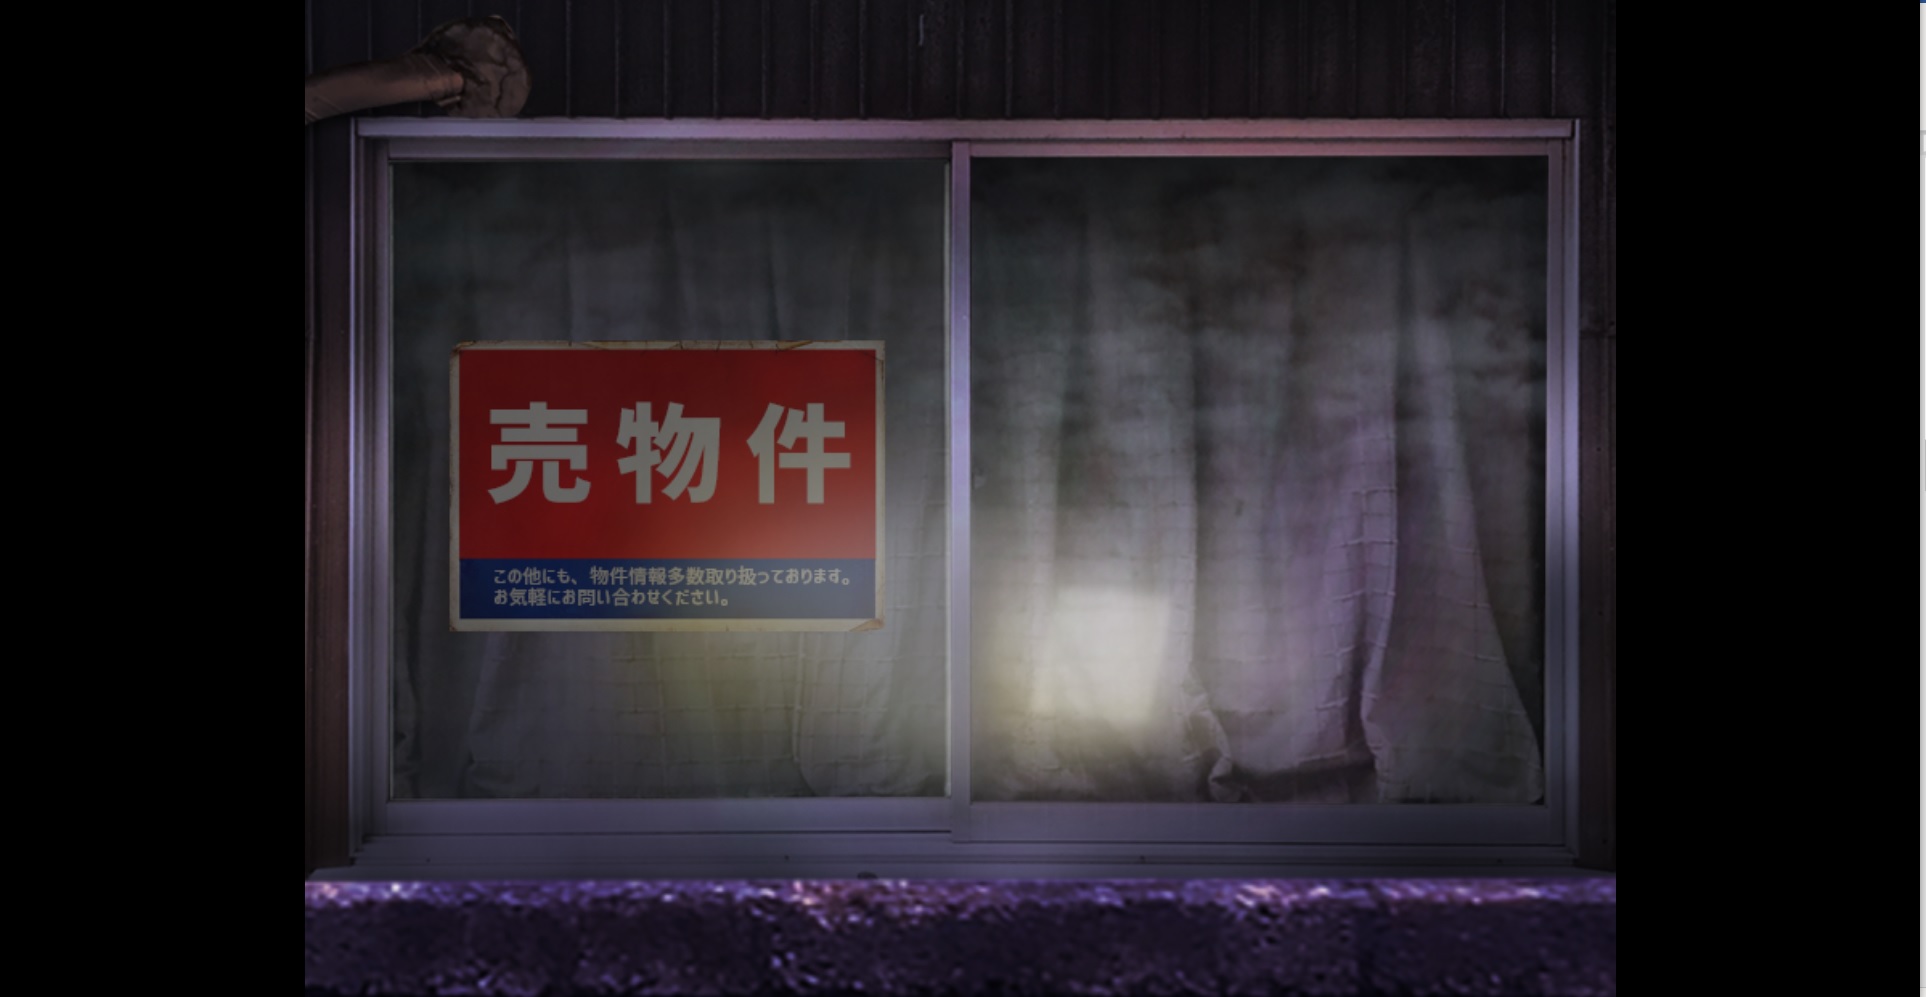 恐怖游戏《Tsugunohi翌日》联动绊爱限定“爱的亡者哭声” 今日Steam版正式发布